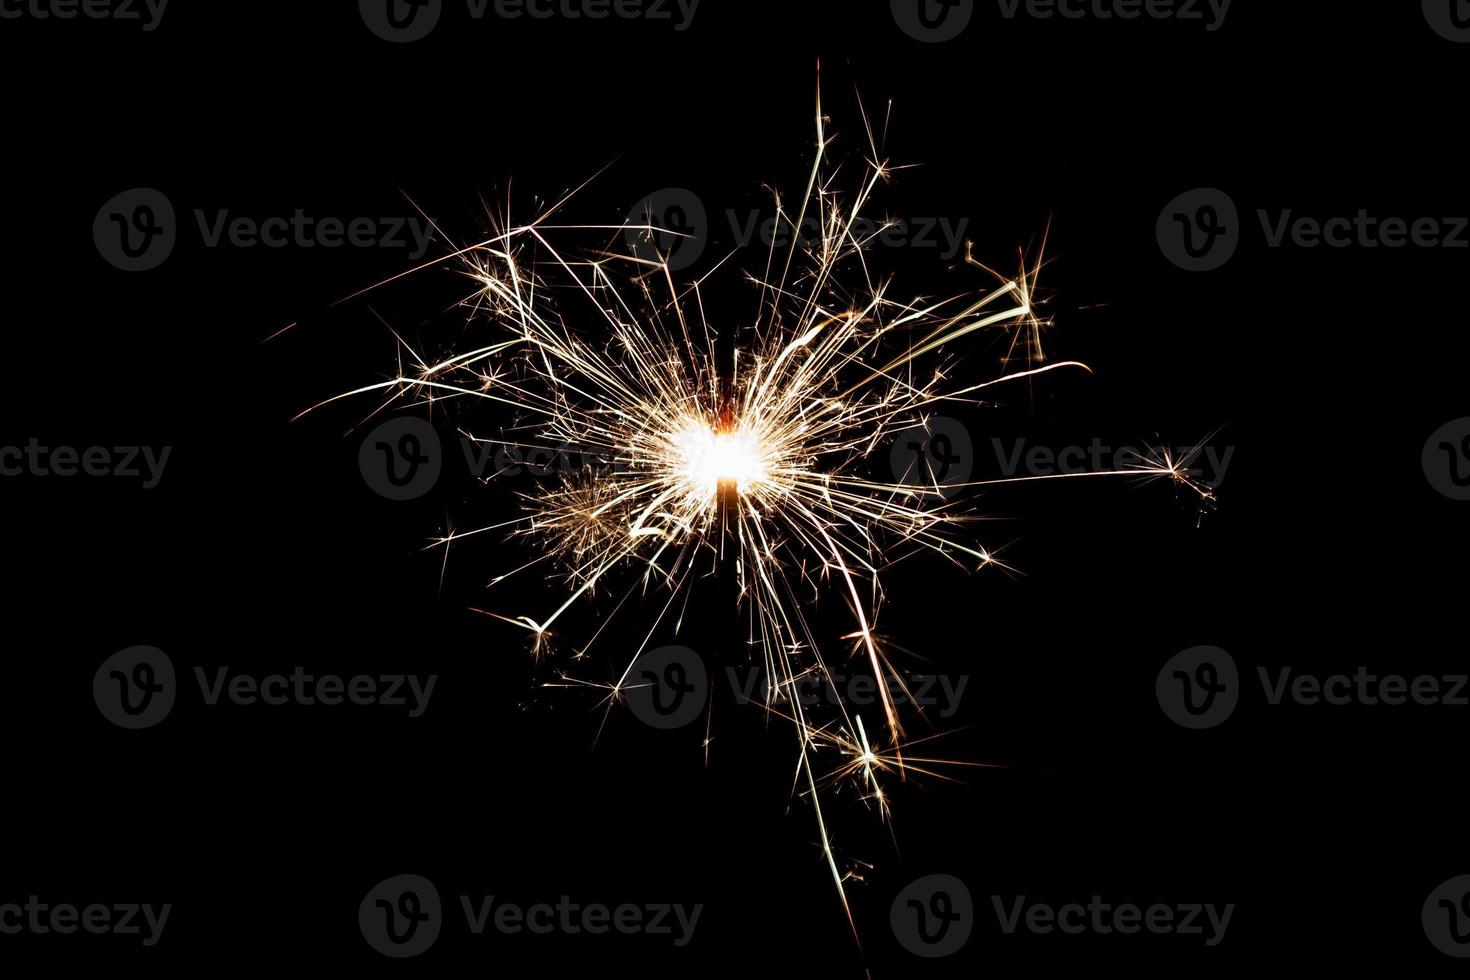 scintillante in fiamme isolato su sfondo nero. tema fuochi d'artificio. effetto luce e consistenza. foto